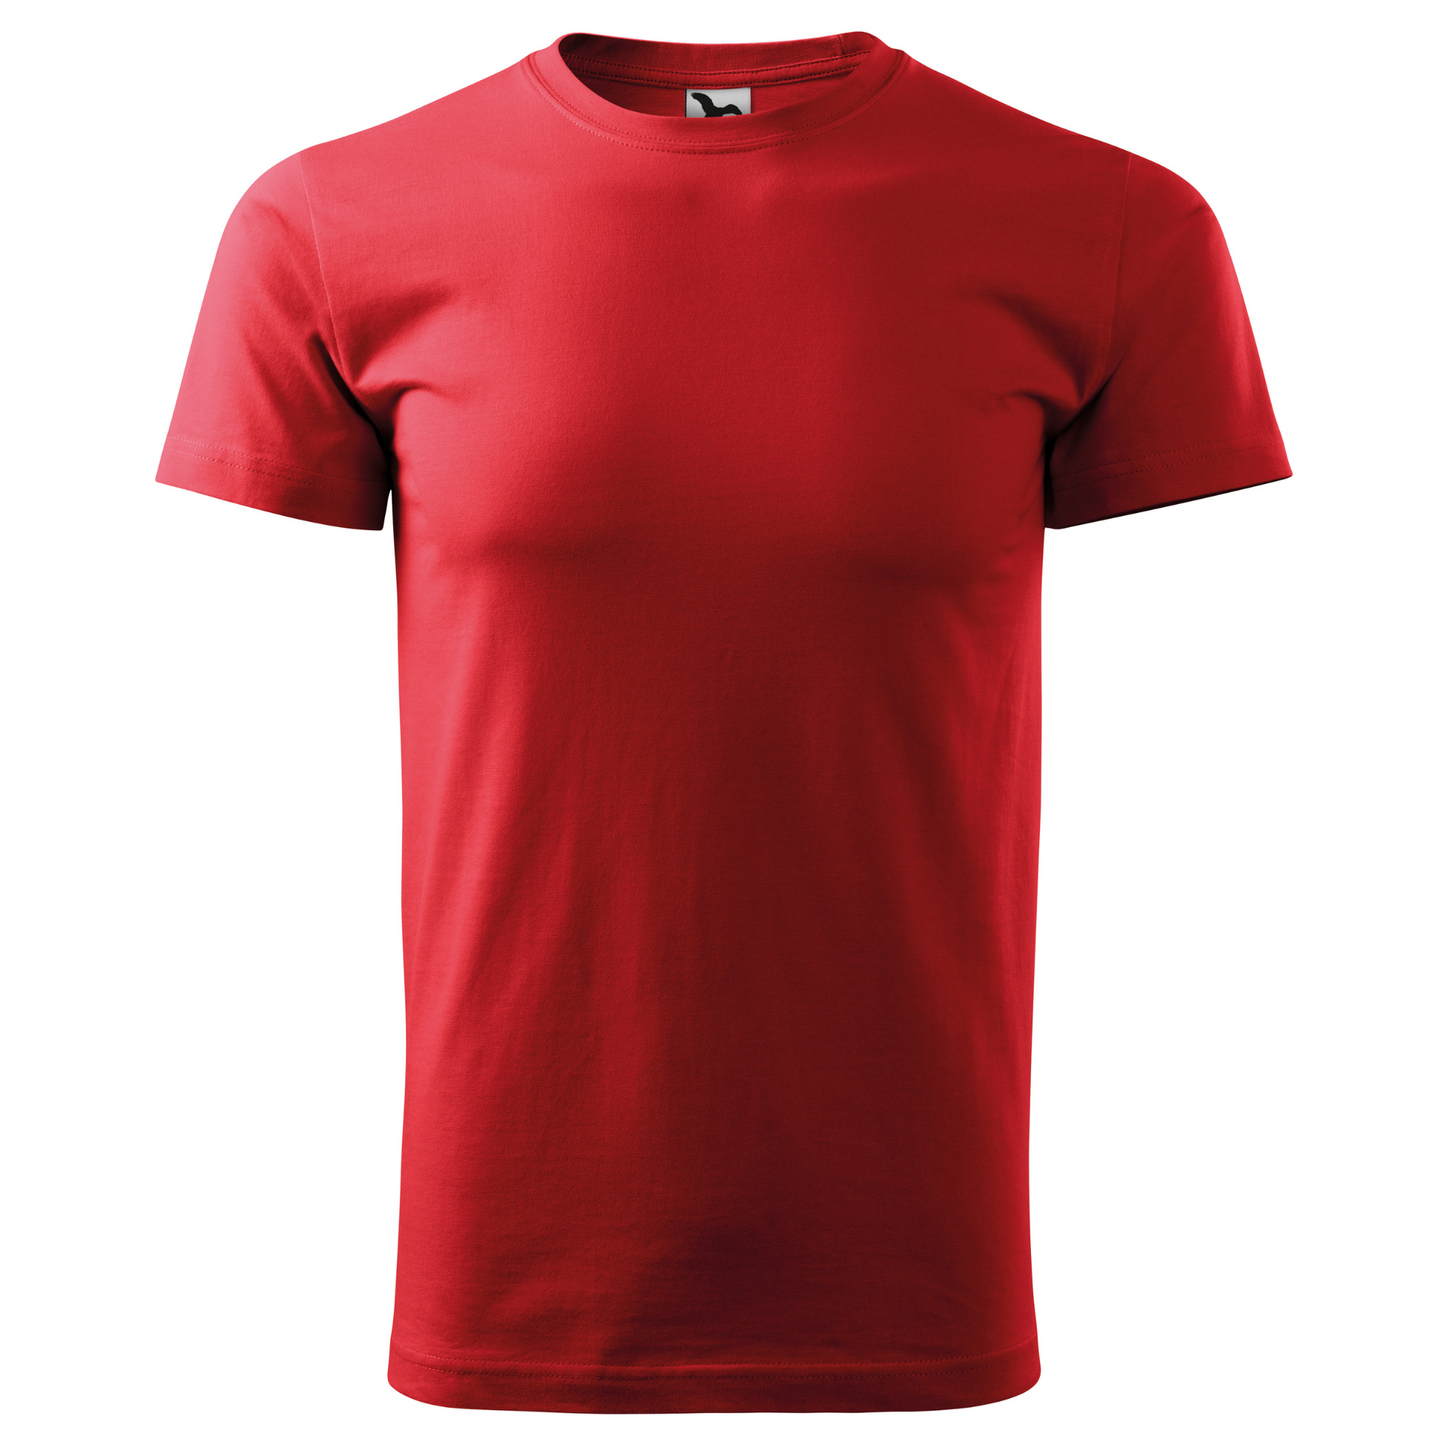 Tricou barbat - Variații Rosu